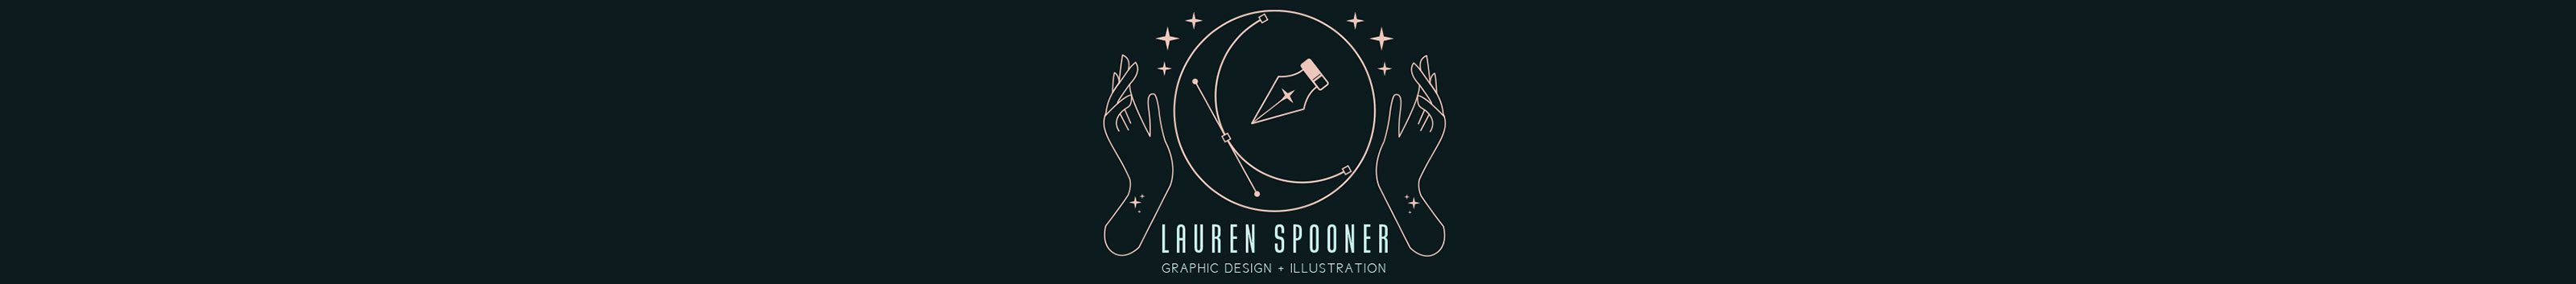 Lauren Spooners profilbanner